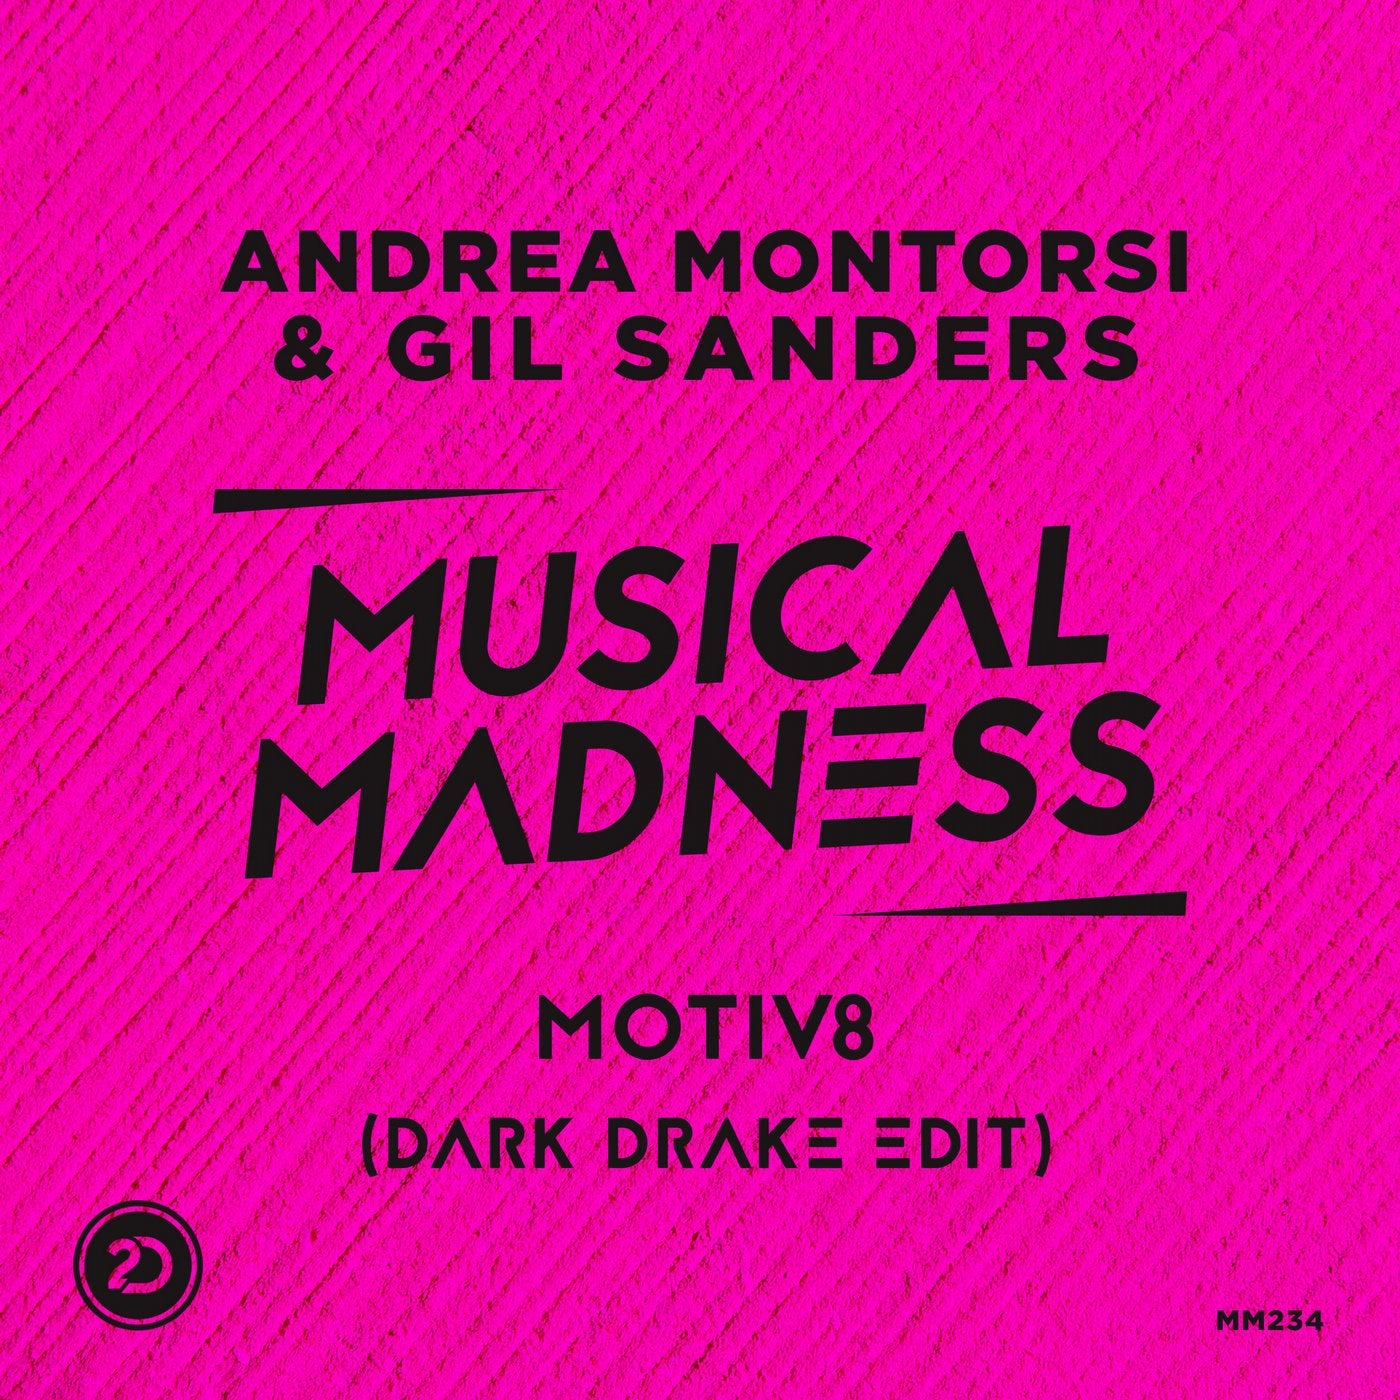 Motiv8 - Dark Drake Edit